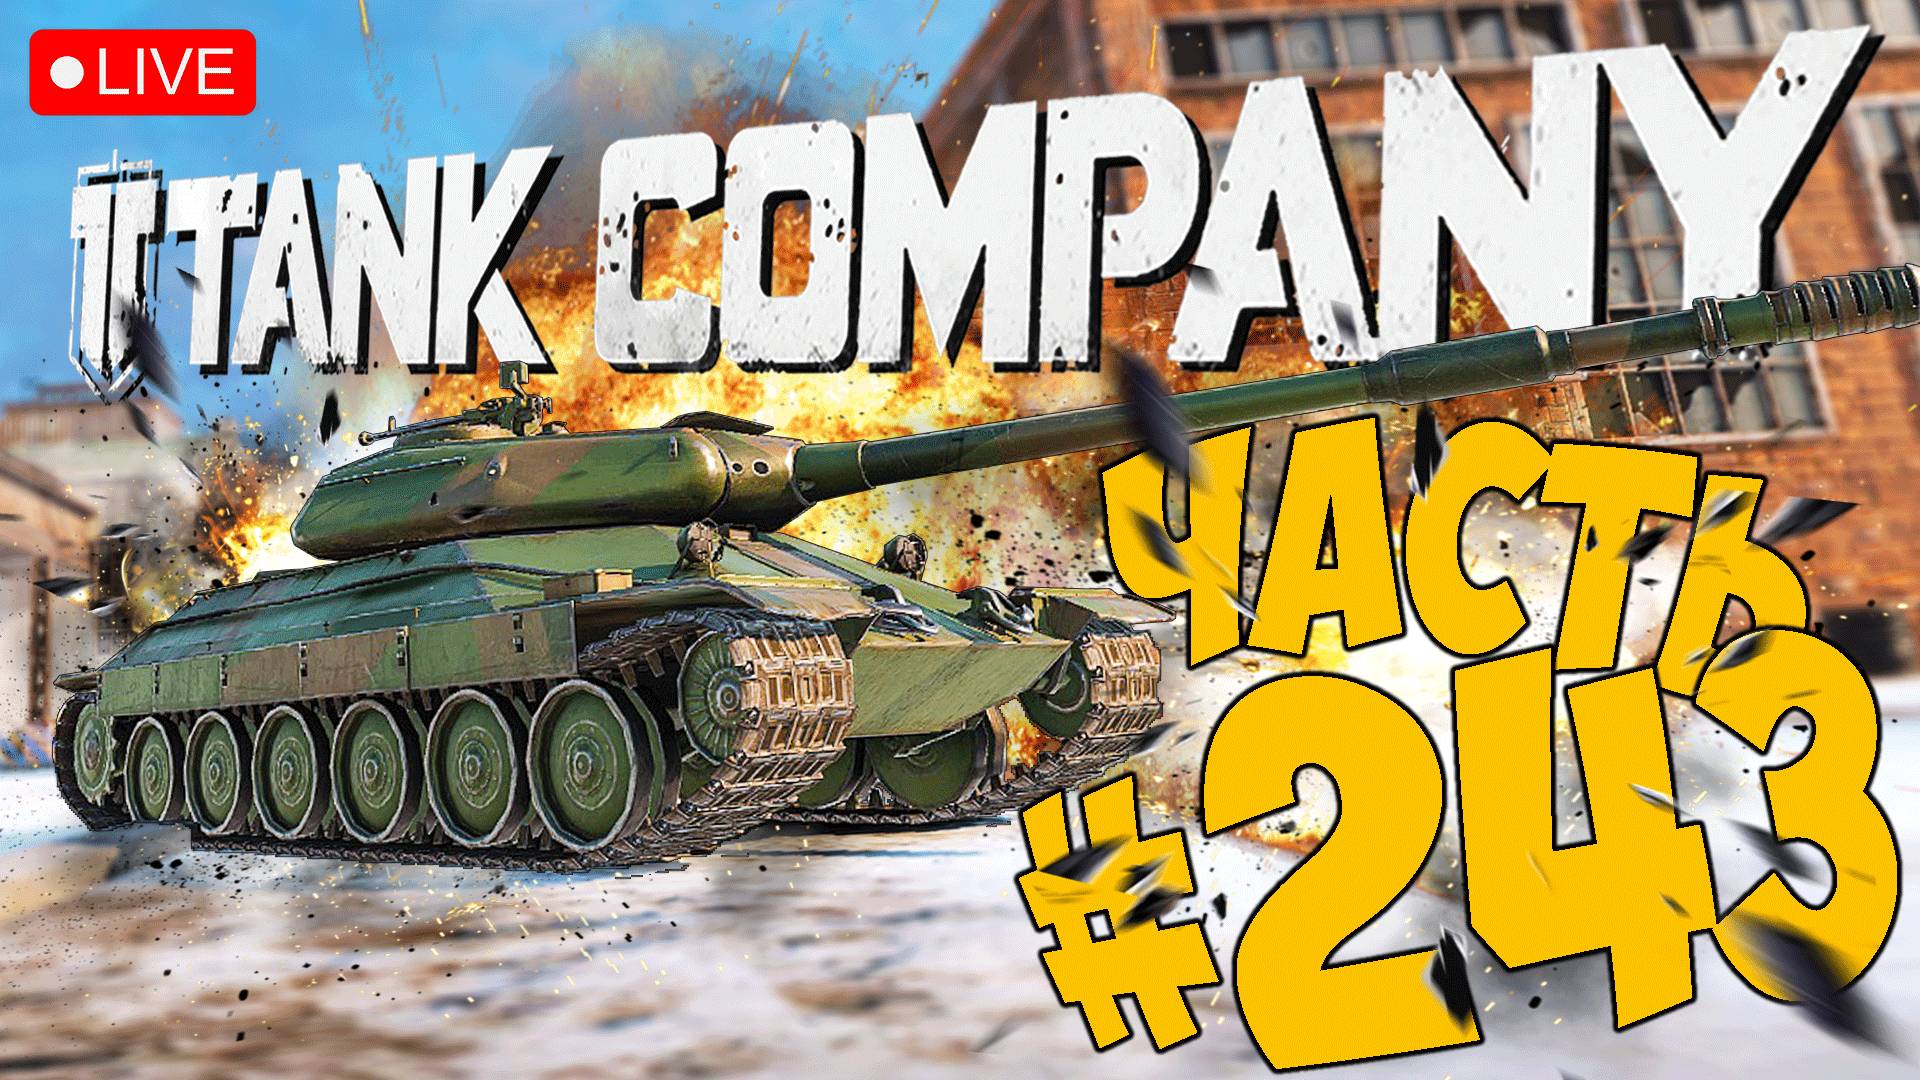 TANK COMPANY ➤ ДА ЧТО С НИМ НЕ ТАК ➤ ЧАСТЬ 243 ➤ ТАНК КОМПАНИ СТРИМ ? #tankcompany